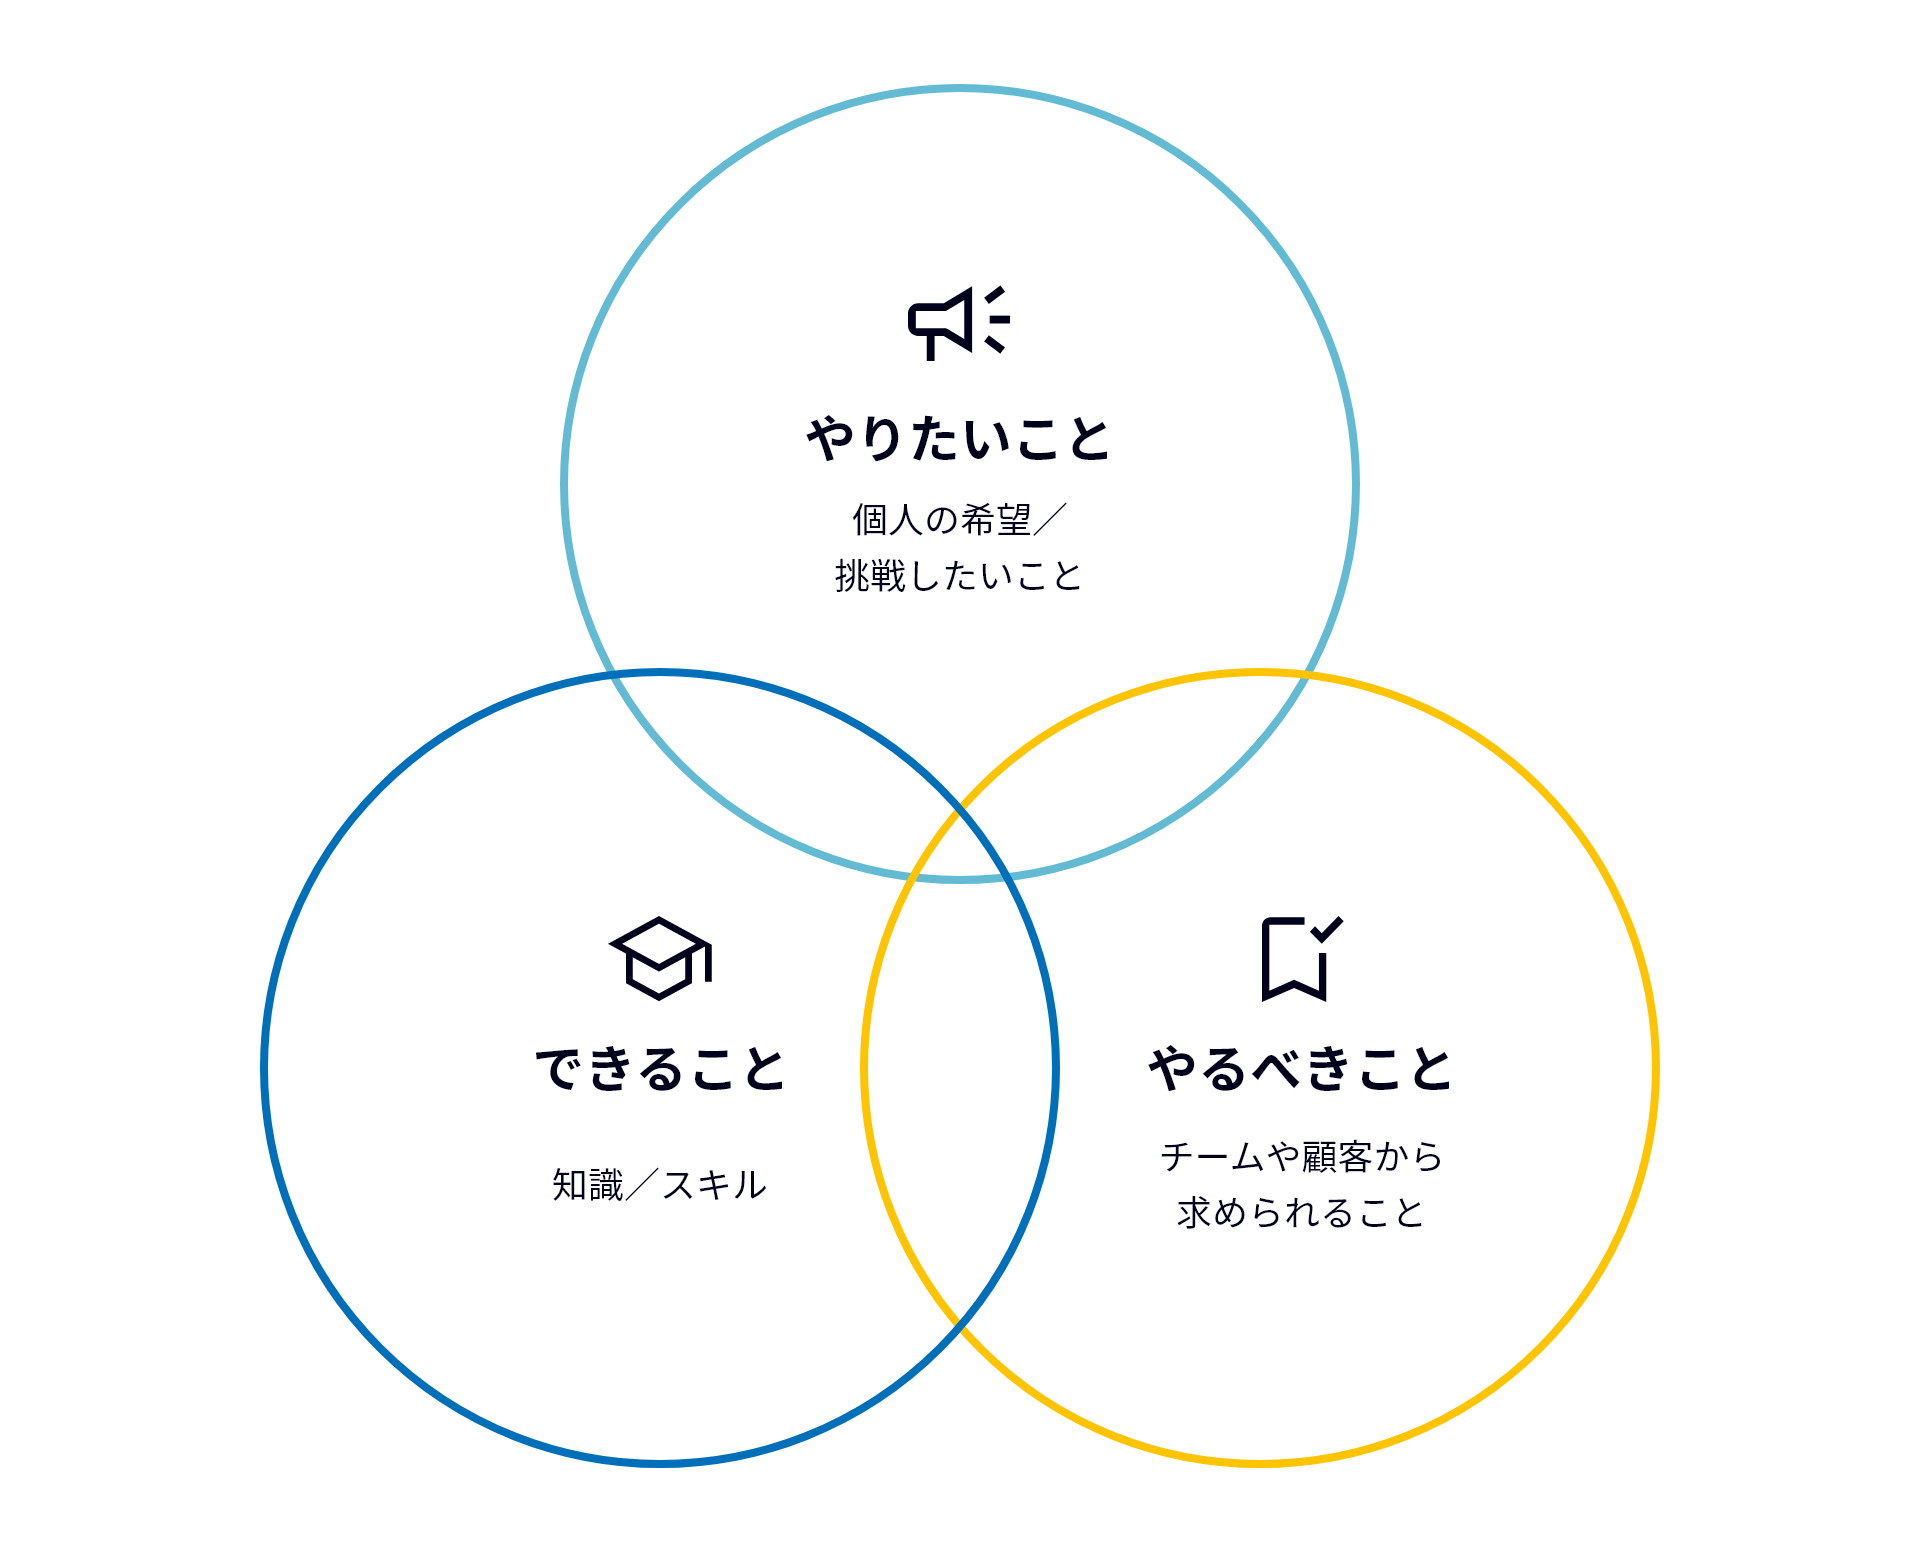 図表：モチベーション3点セット。やりたいこと（個人の希望／挑戦したいこと）、できること（知識・スキル）、やるべきこと（チームや顧客から求められること）の3つの輪が重なり合っている。